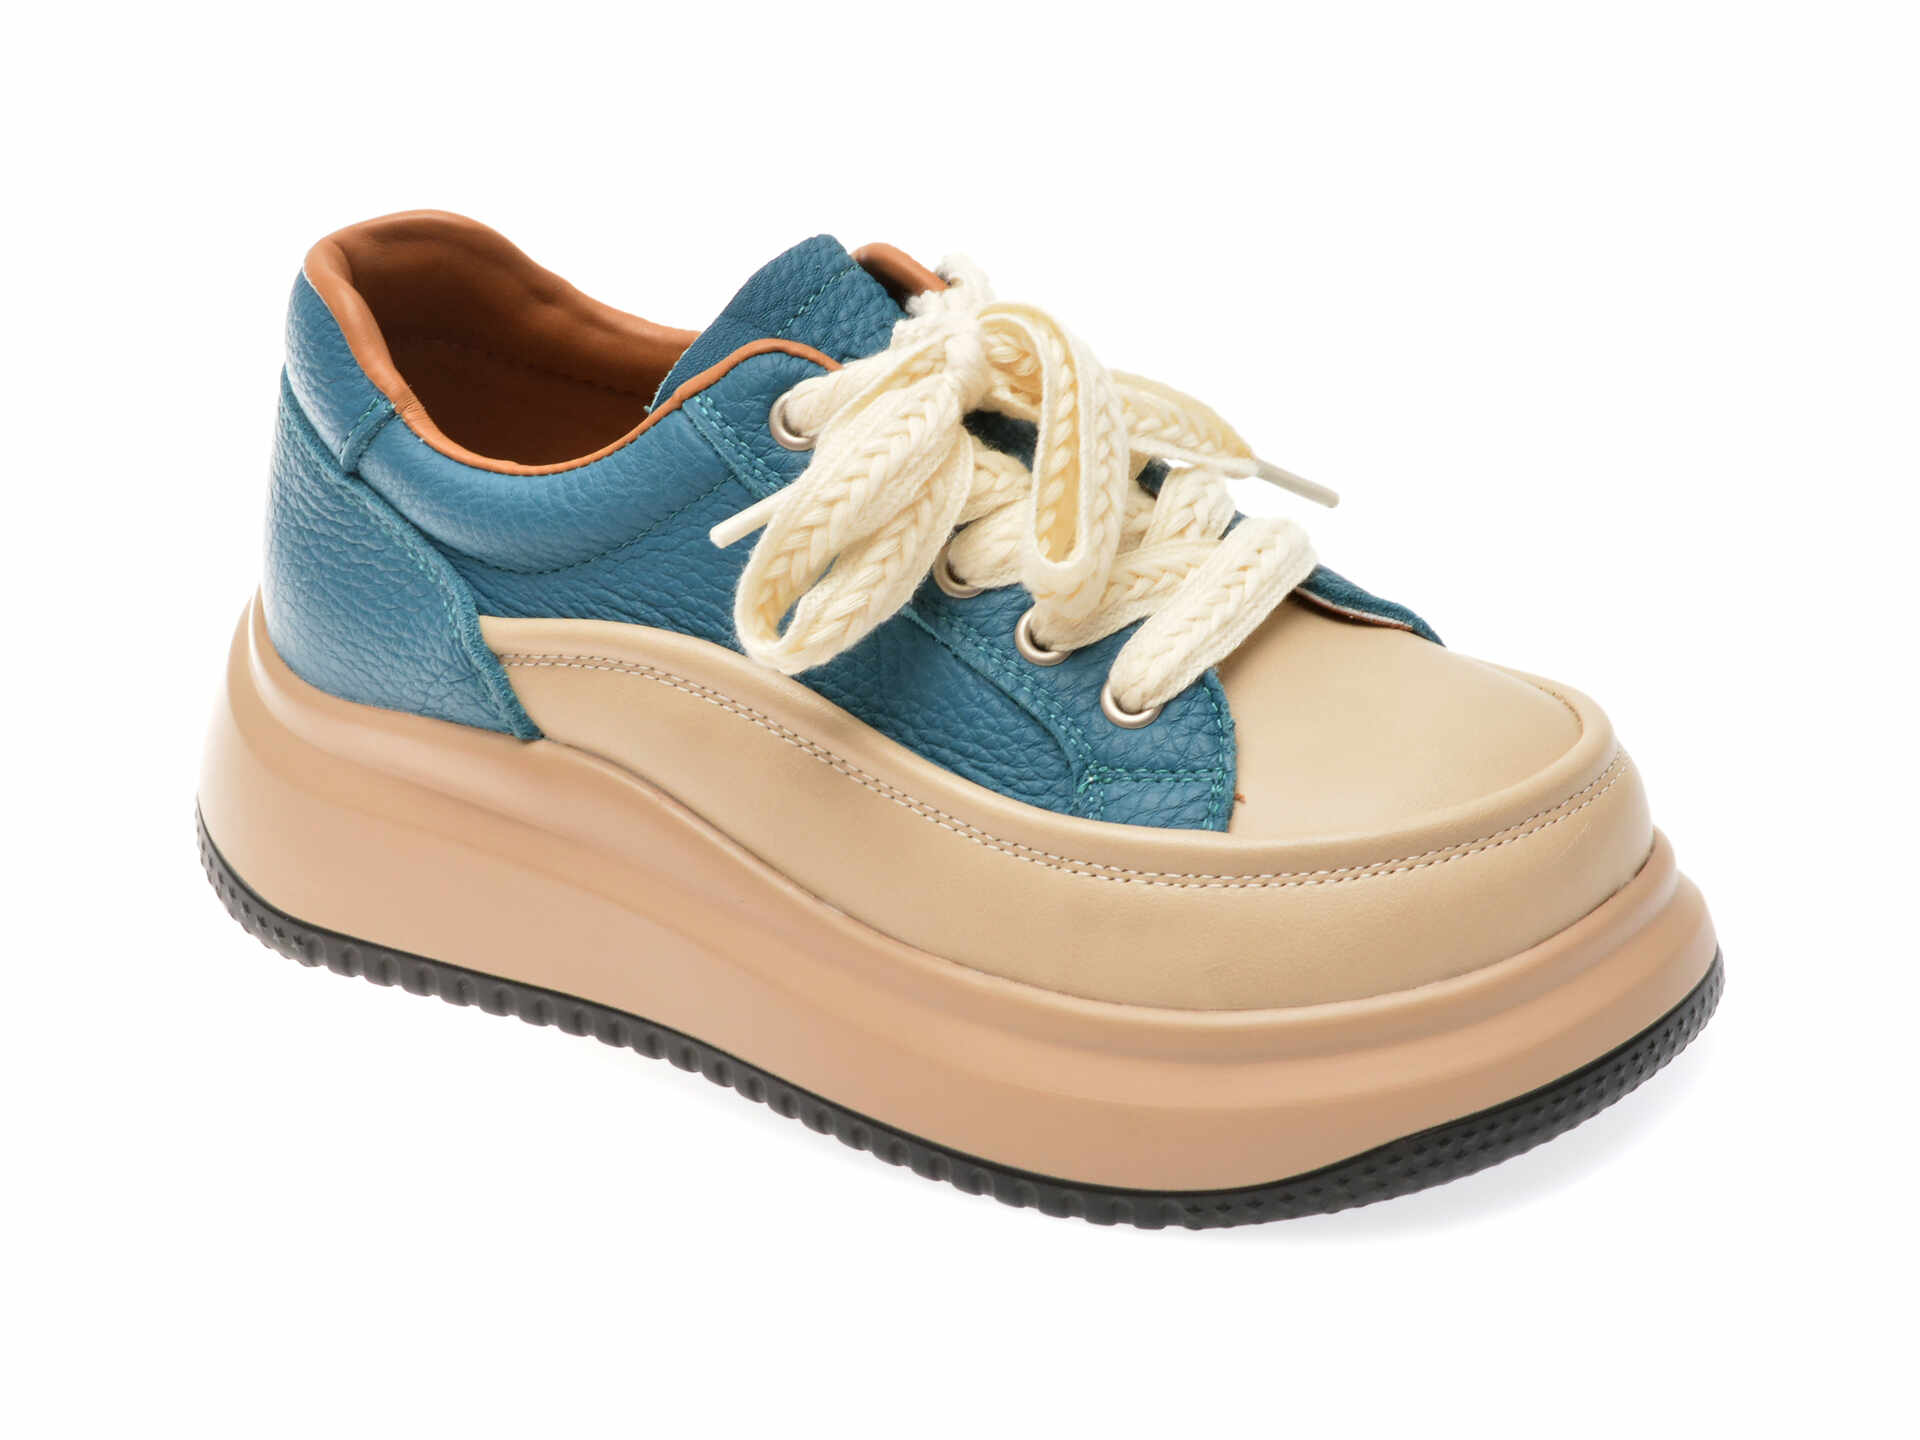 Pantofi casual GRYXX albastri, 2350, din piele naturala